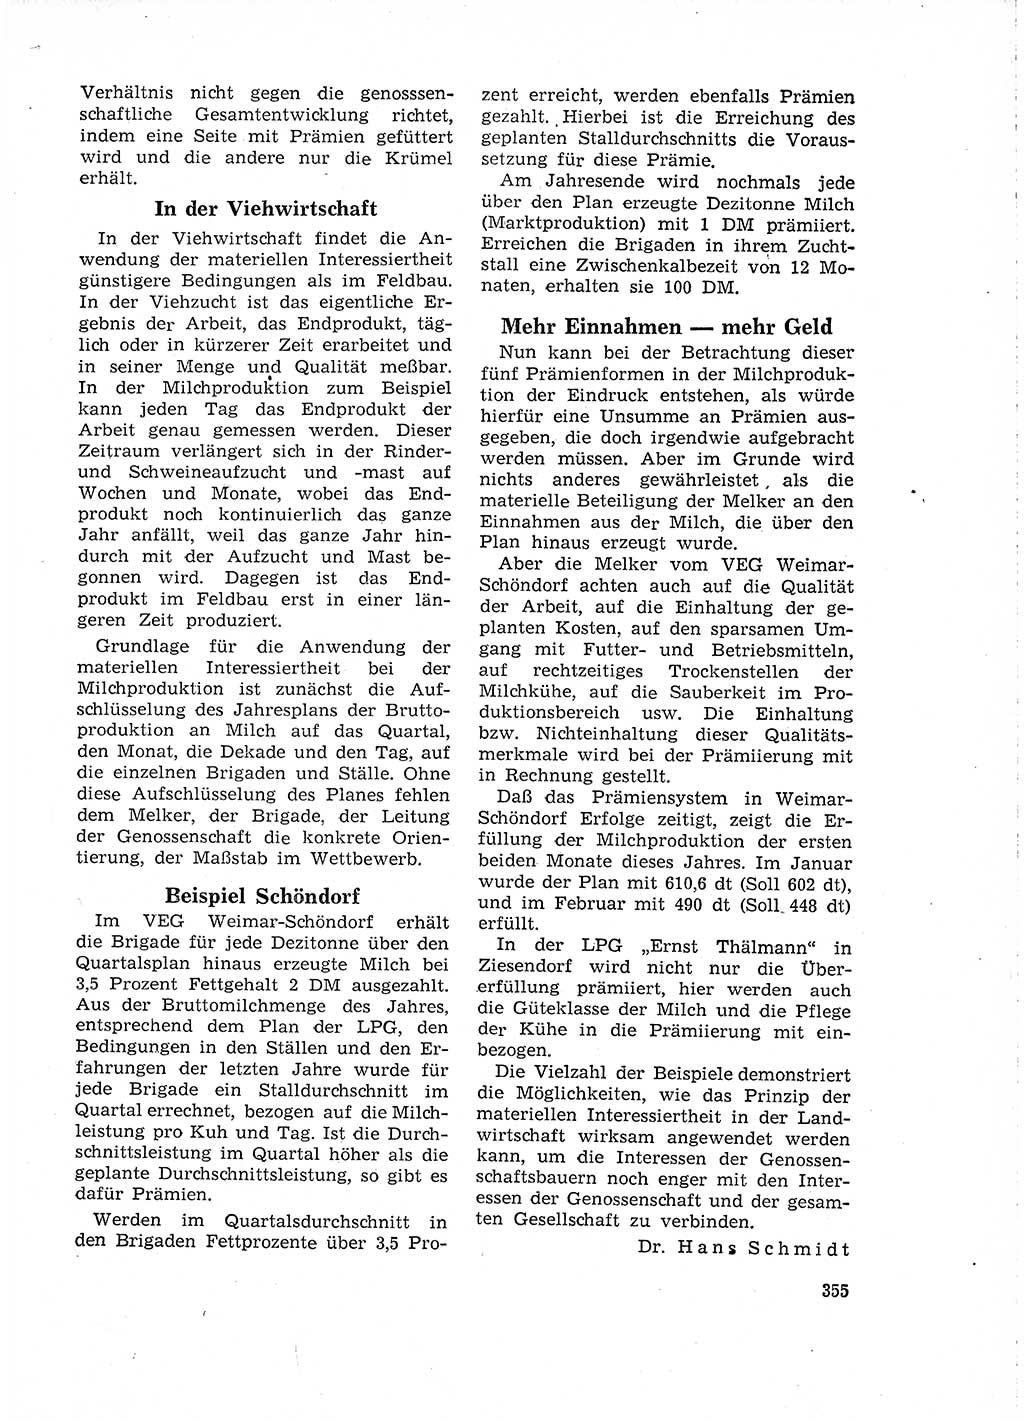 Neuer Weg (NW), Organ des Zentralkomitees (ZK) der SED (Sozialistische Einheitspartei Deutschlands) für Fragen des Parteilebens, 18. Jahrgang [Deutsche Demokratische Republik (DDR)] 1963, Seite 355 (NW ZK SED DDR 1963, S. 355)